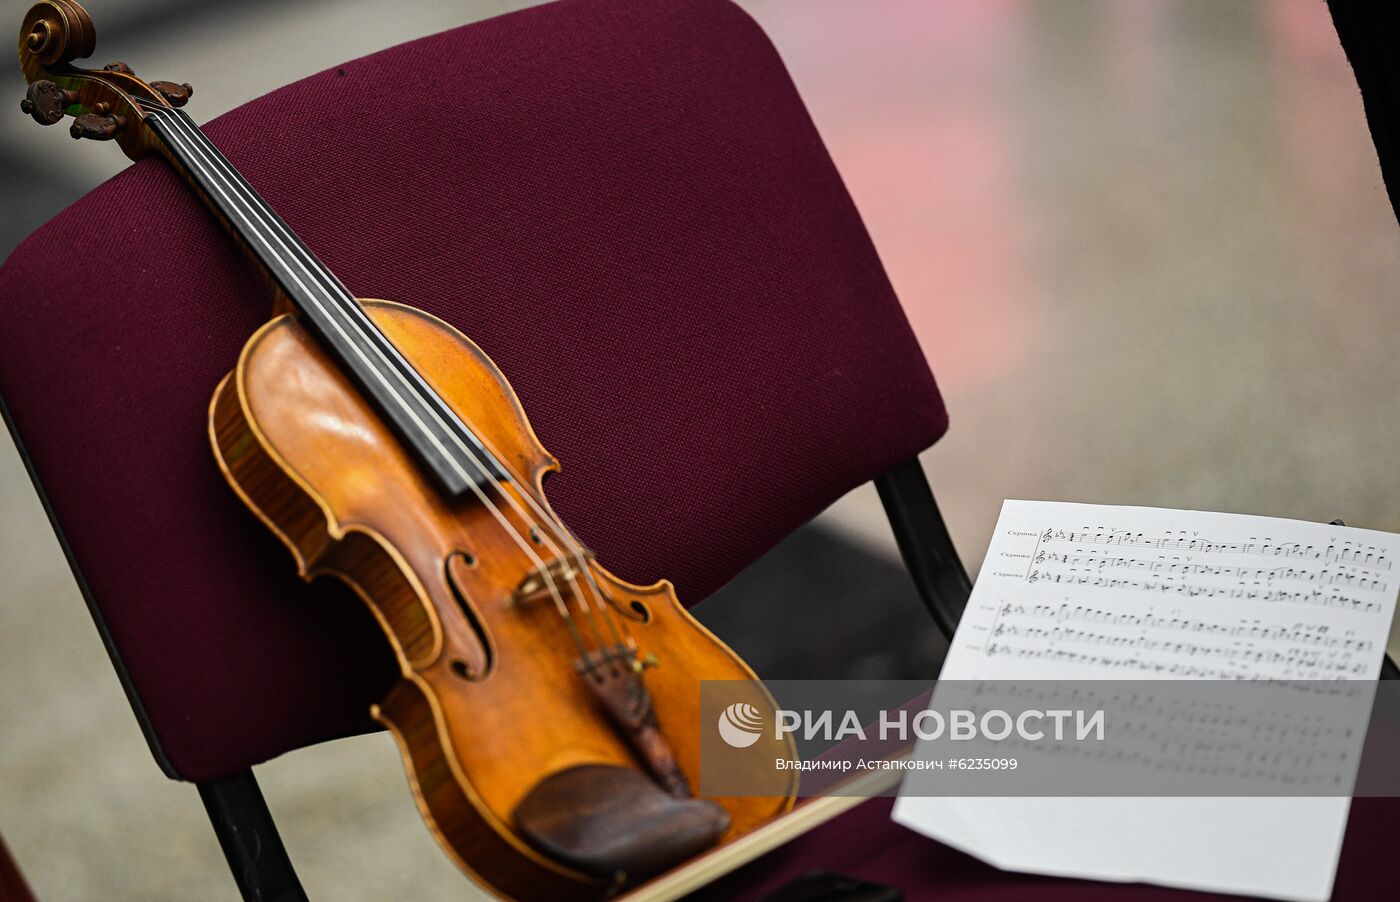 Концерт "Музыка мира" в музее Победы